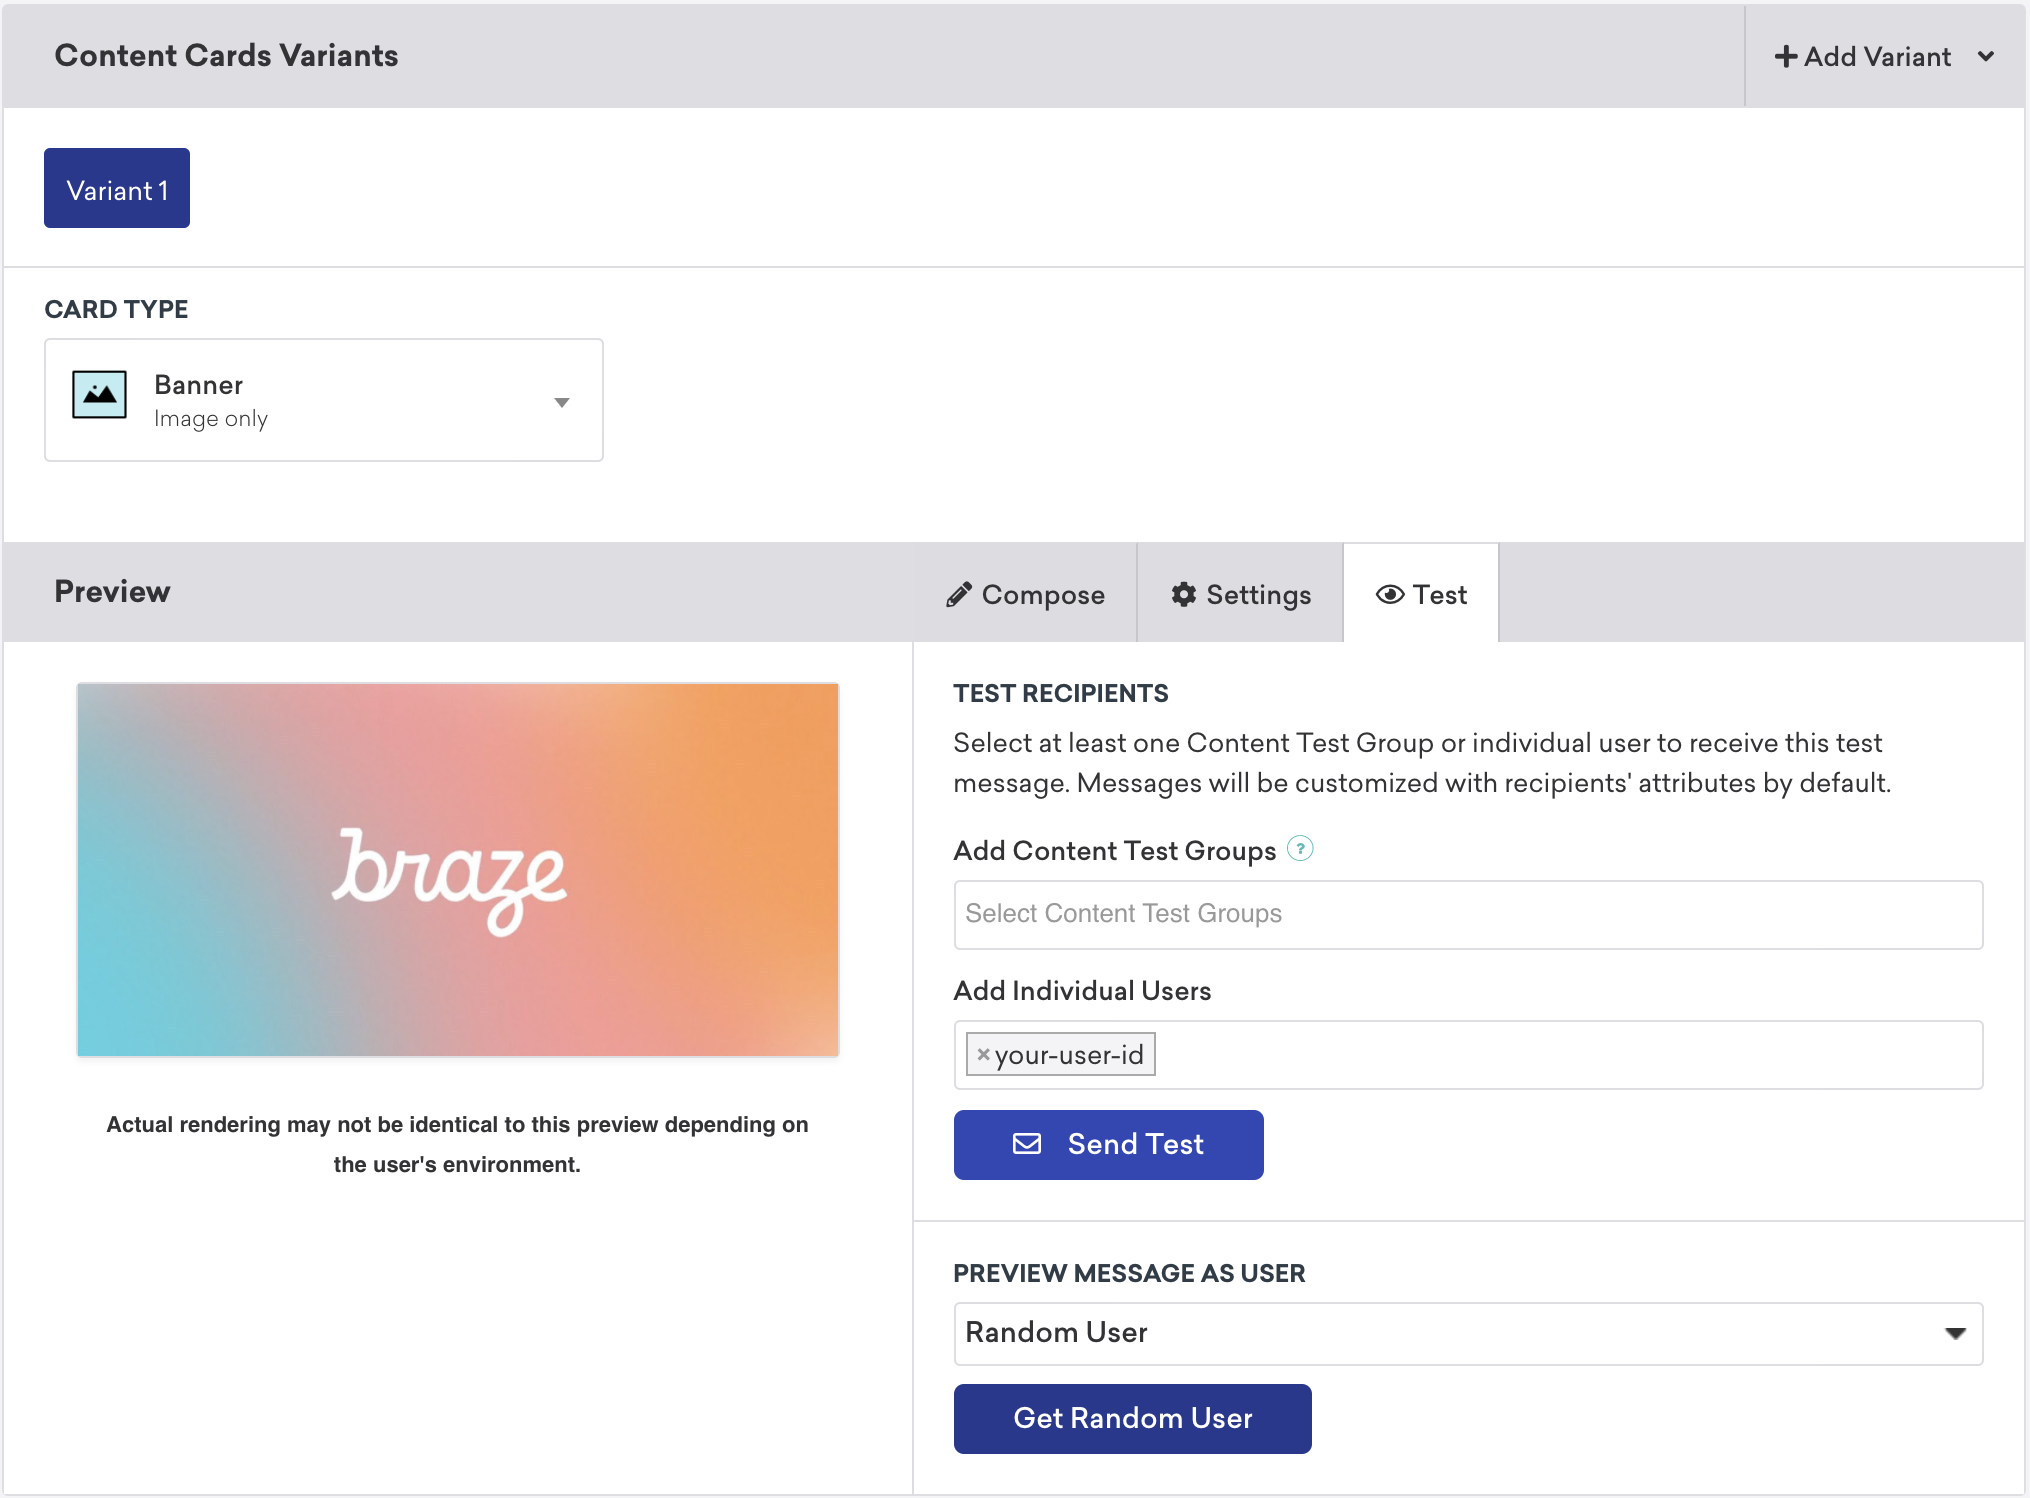 コンテンツカードをテストするために、テスト受信者として自分のユーザー ID を追加できることを示す Braze コンテンツカードキャンペーン。